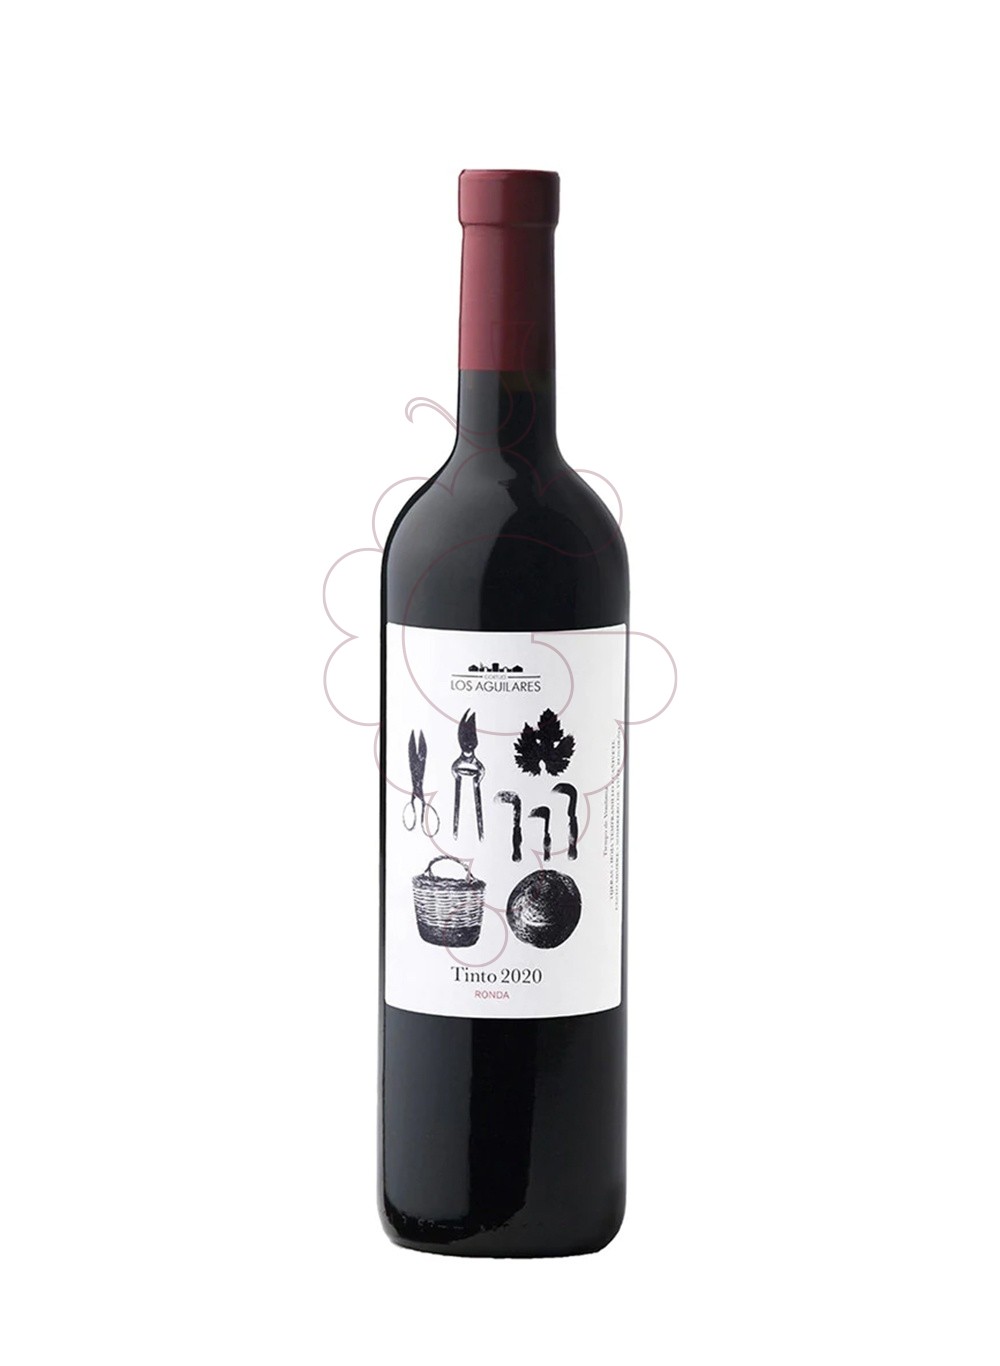 Foto Los aguilares negre 2020 75 cl vino tinto